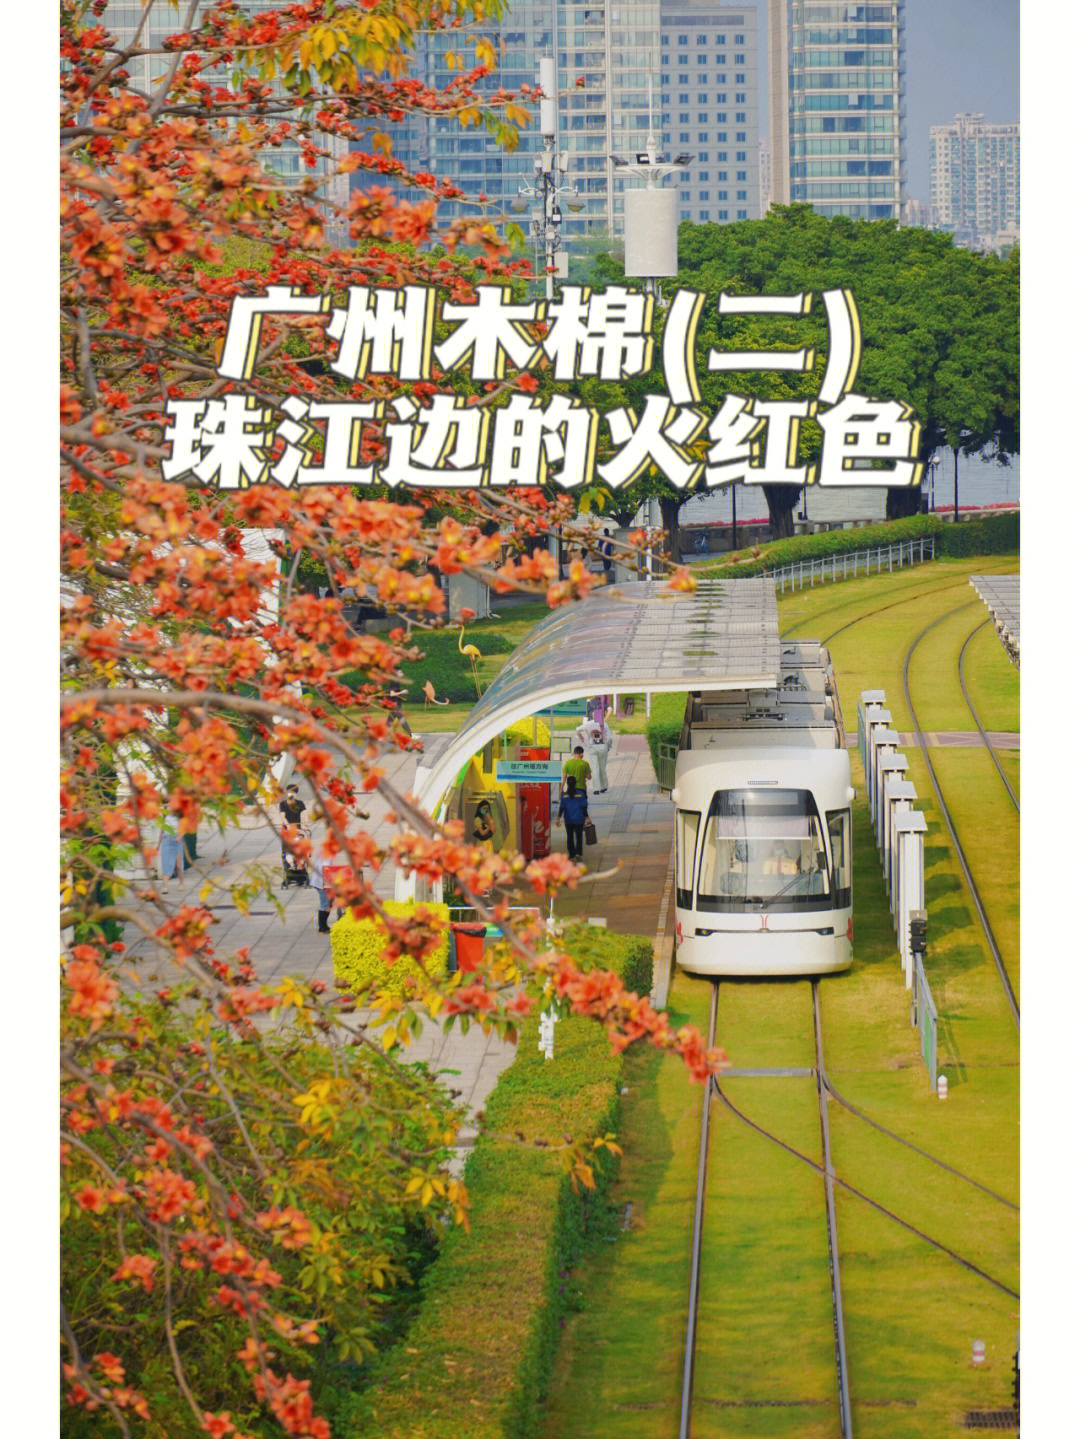 广州磨碟沙公园门票图片